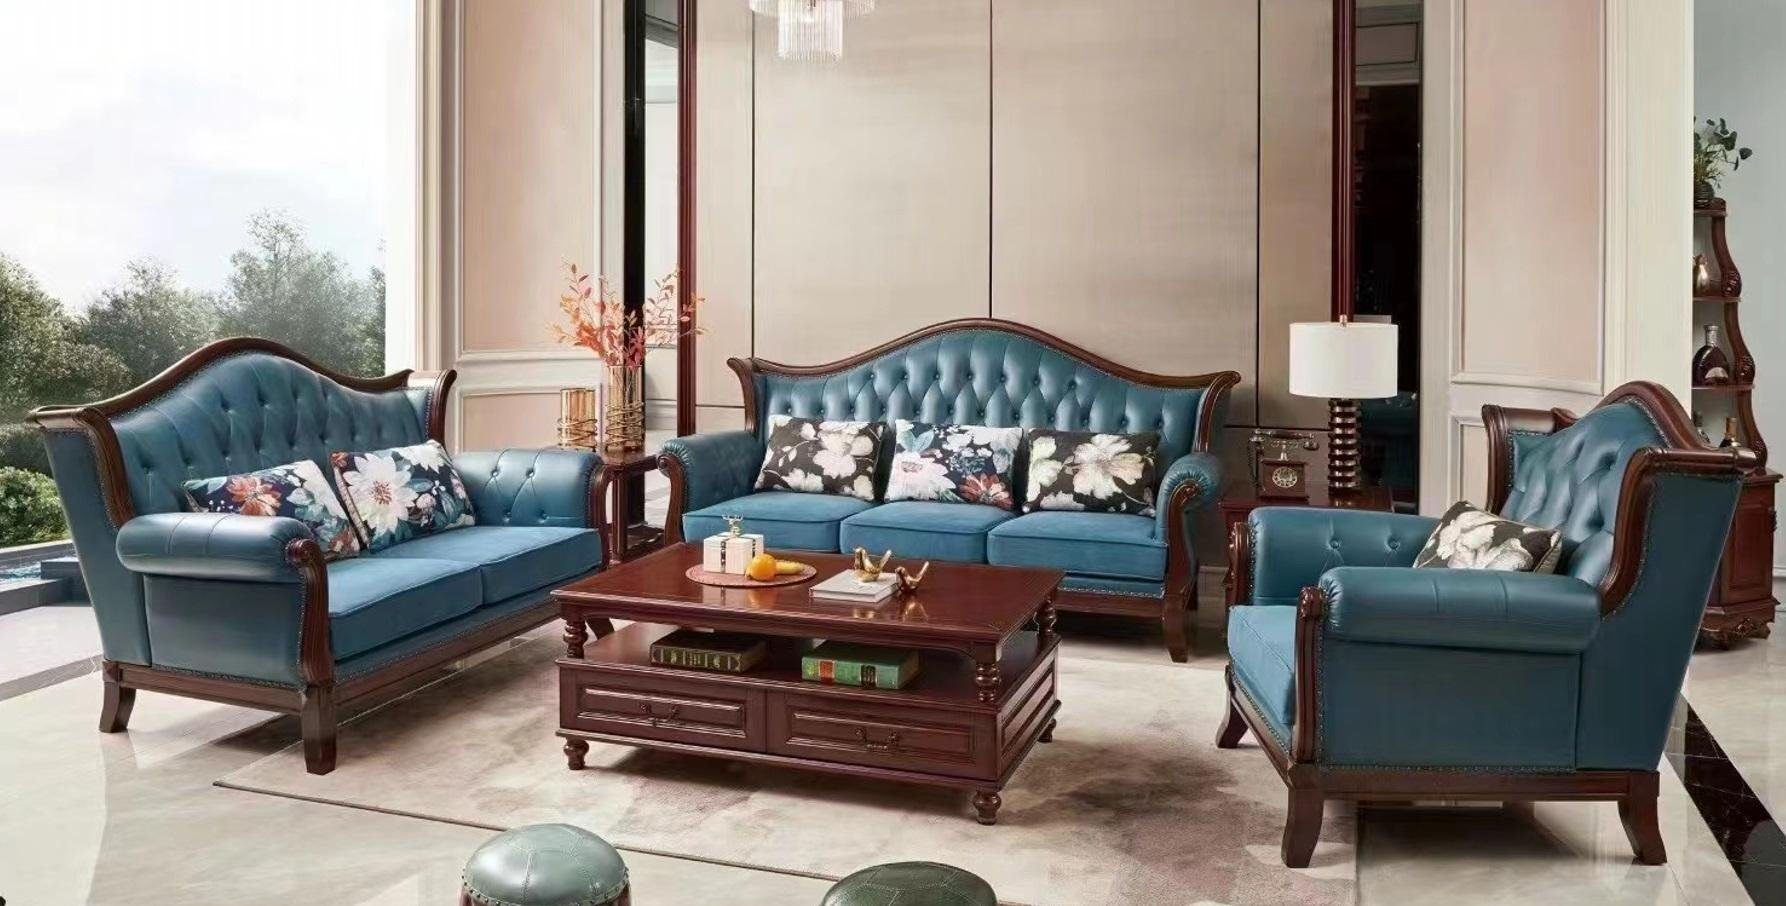 JVmoebel Chesterfield-Sofa Luxus Sofagarnitur Set 3+2+1 Sitzer Wohnzimmermöbel Neu, Made in Europe | Chesterfield-Sofas